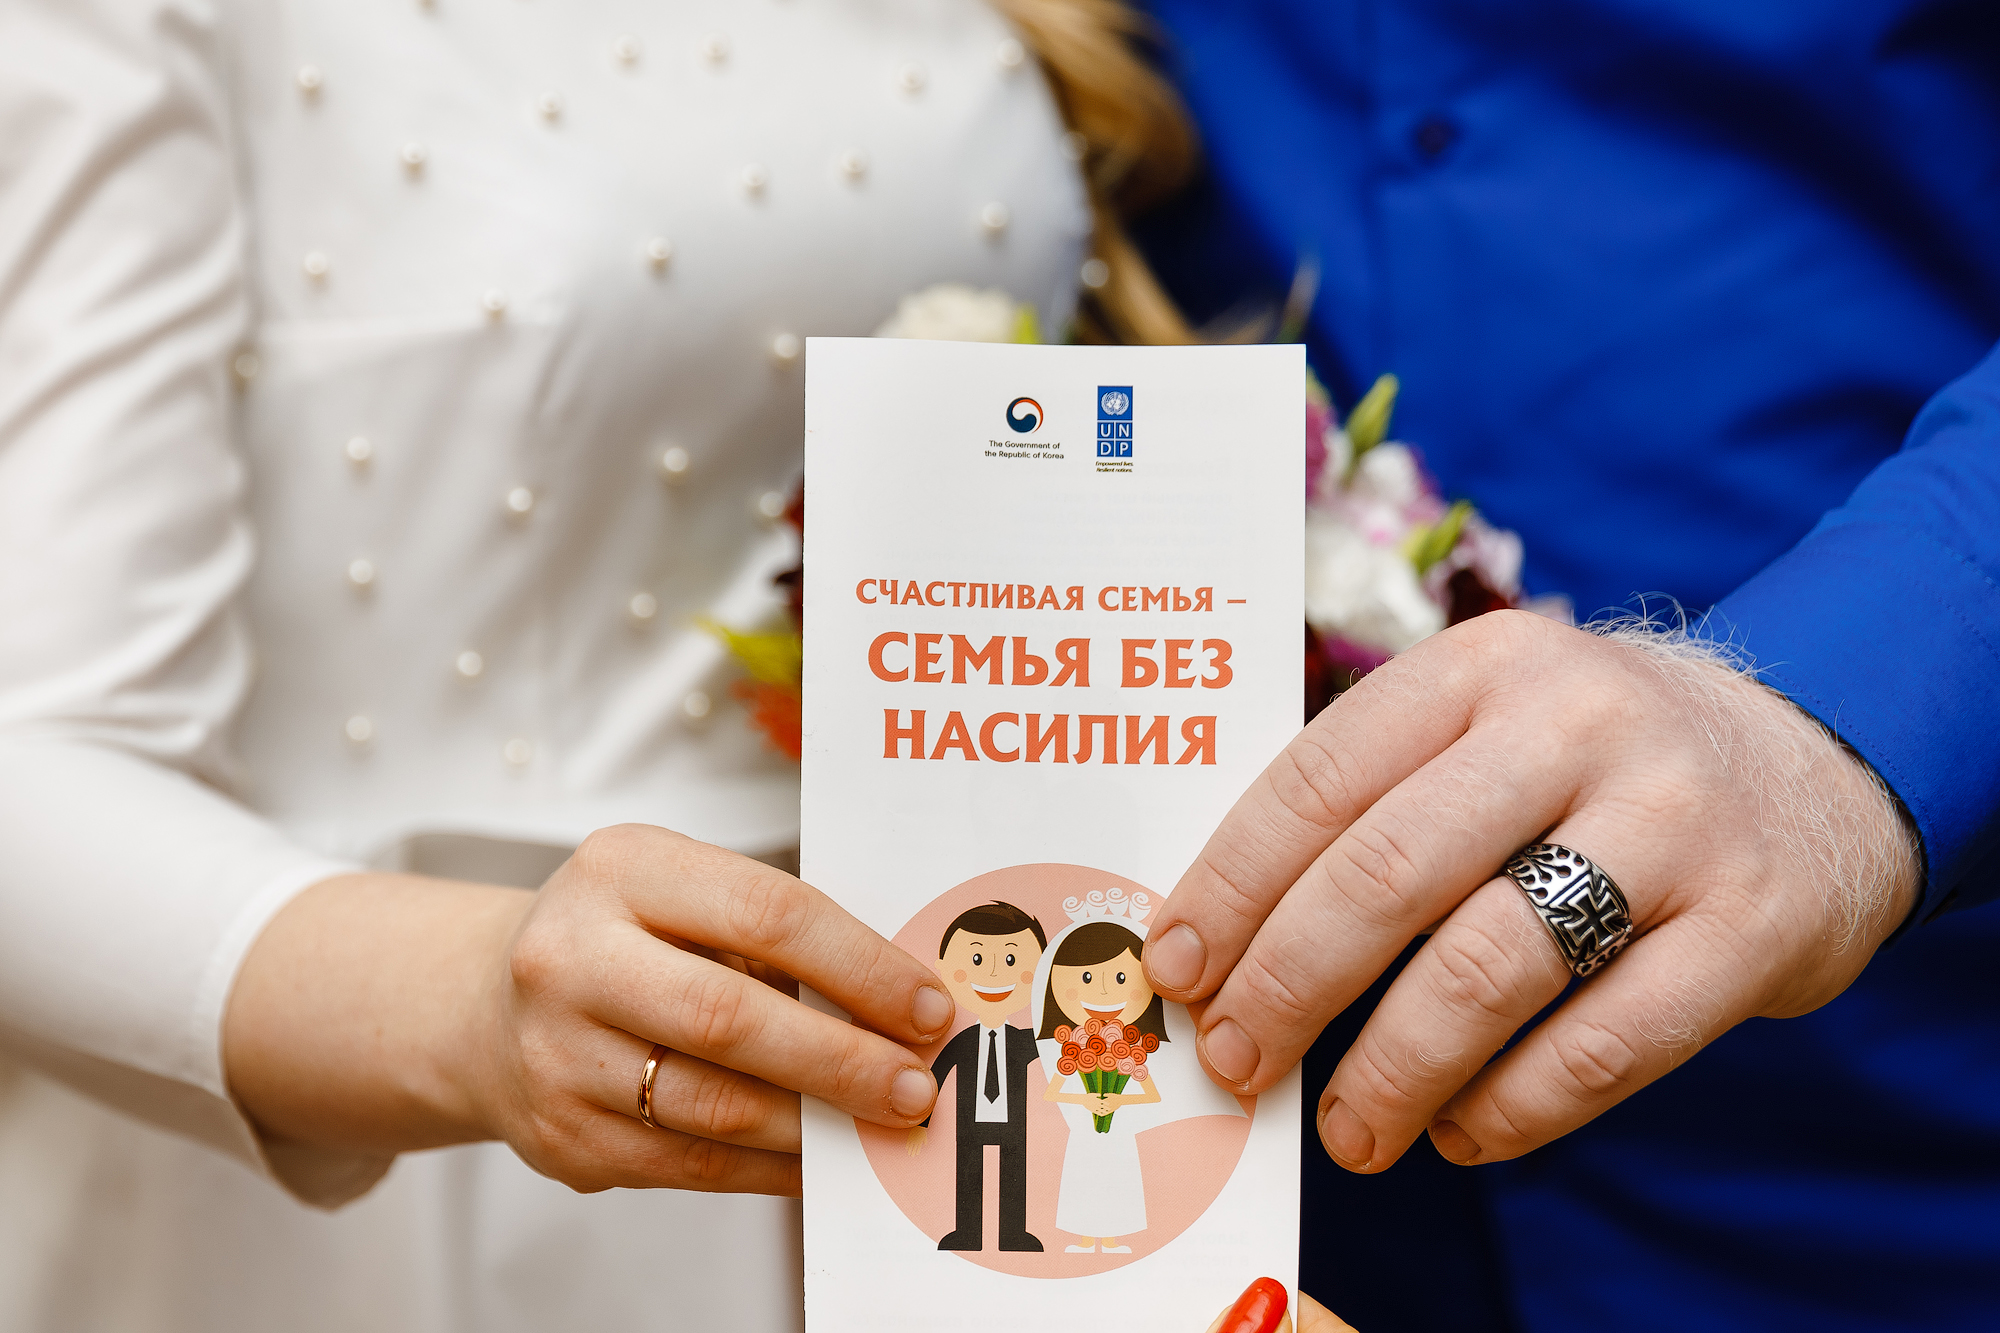 În satul Chirsova, toți tinerii căsătoriți sunt instruiți cum să prevină conflictele în familie și violența. 